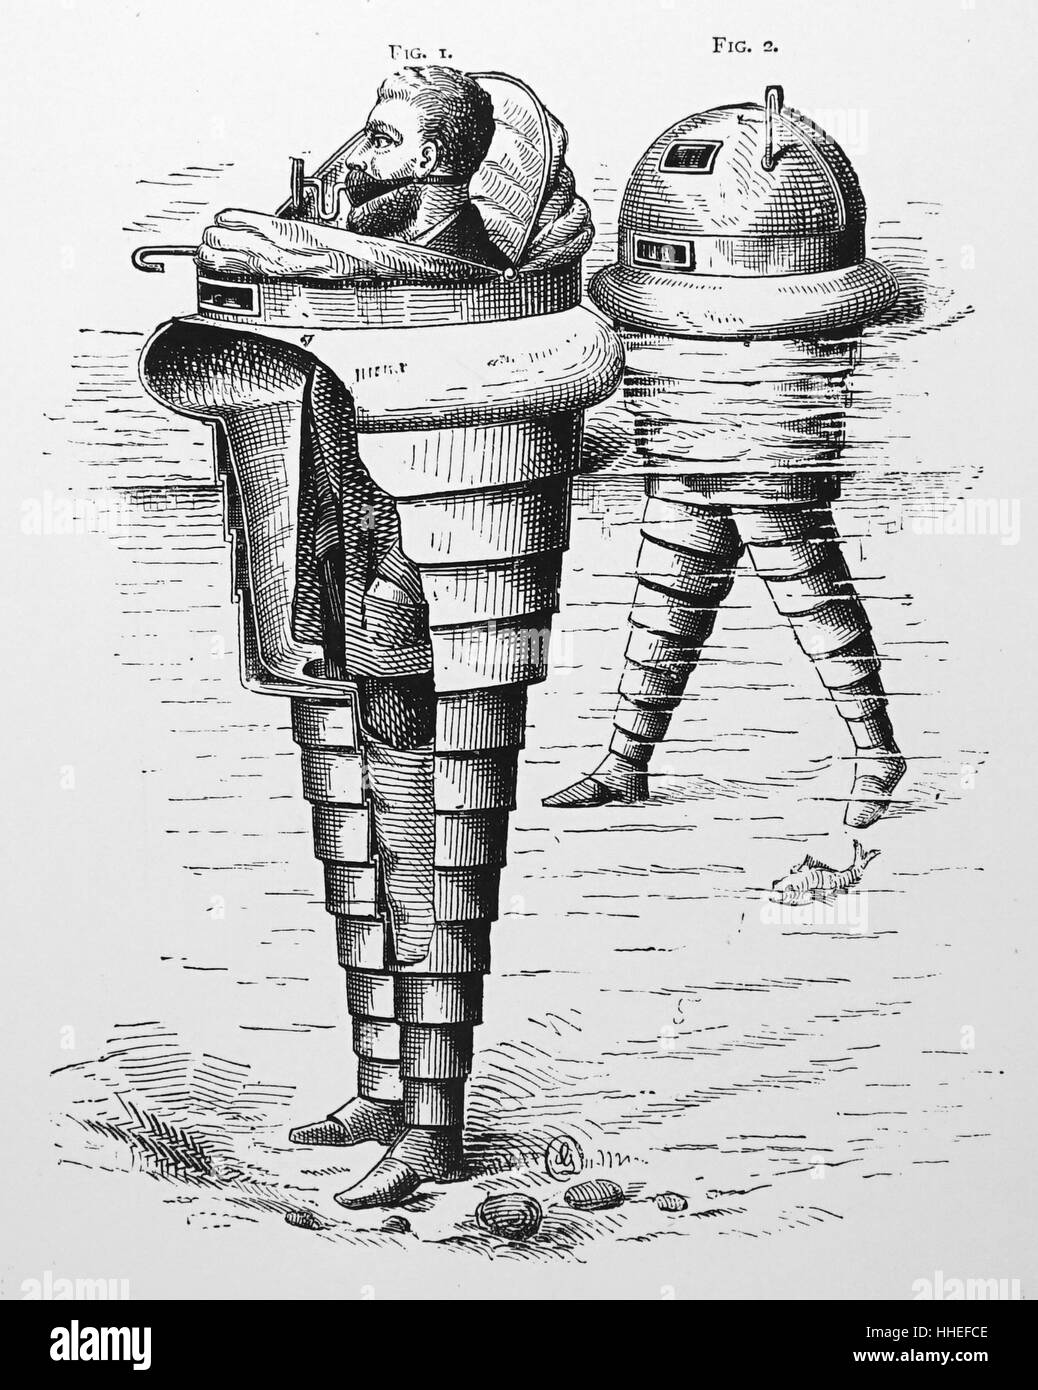 Abbildung: Darstellung eines Lebens - Bewahrer von Trangott Beek von Newark, der über eine abgedichtete Wasser- und Lebensmittelversorgung entwickelt. Vom 19. Jahrhundert Stockfoto